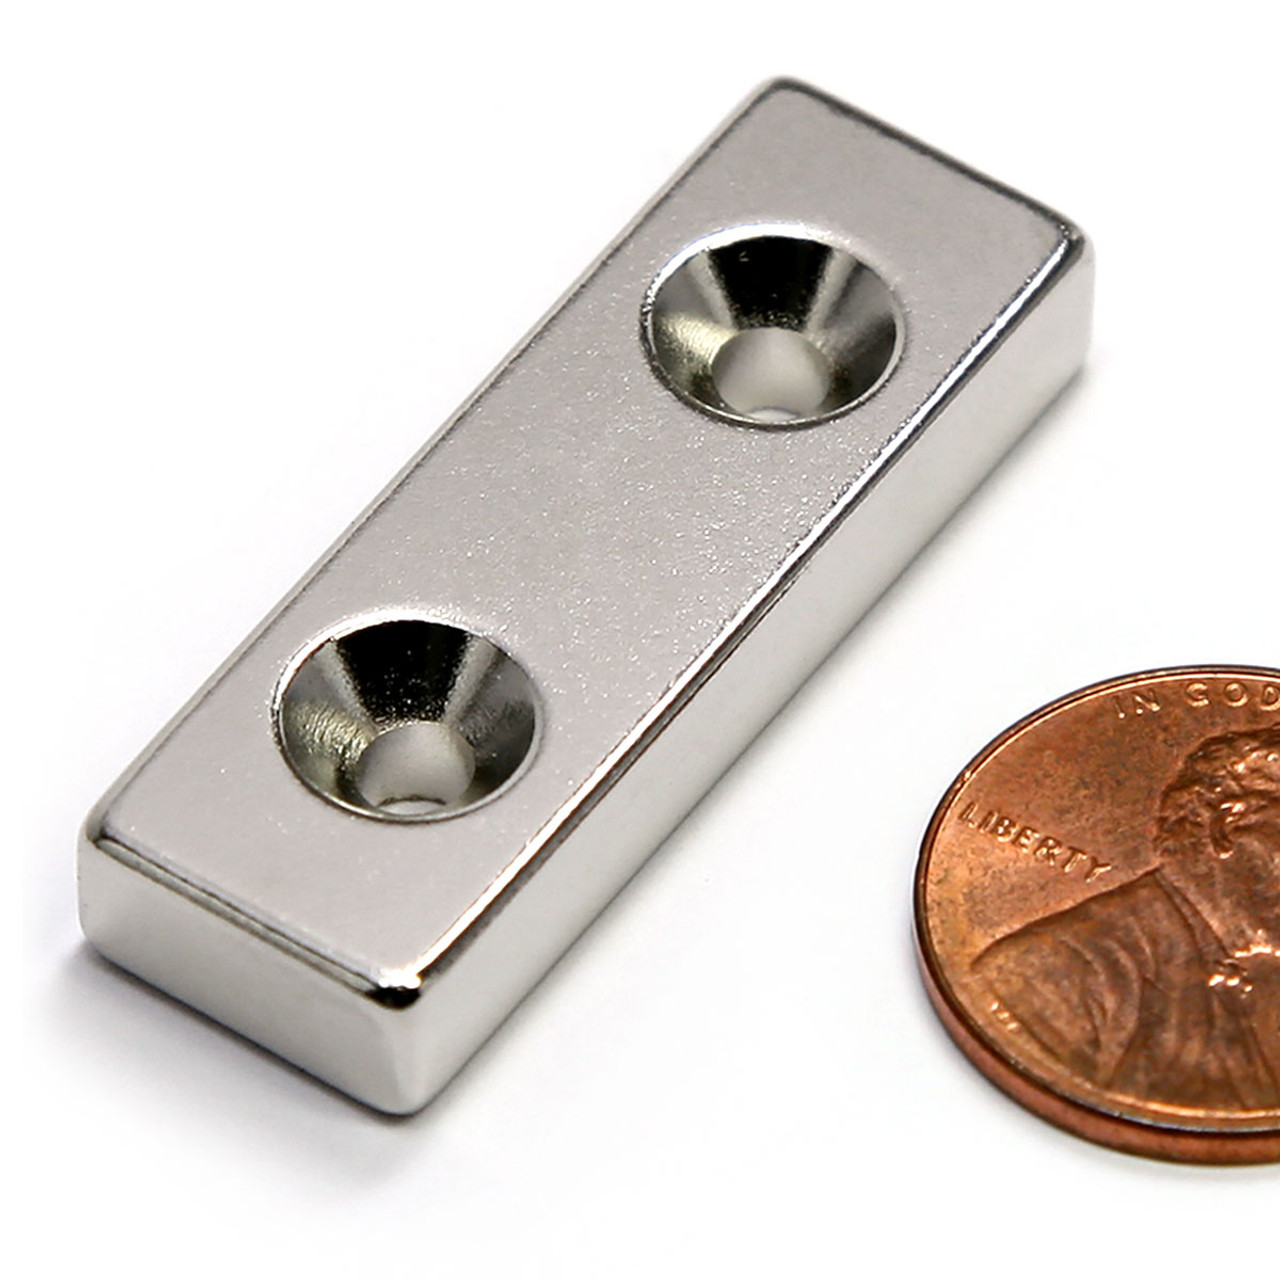 rectangular countersunk neodymium magnets